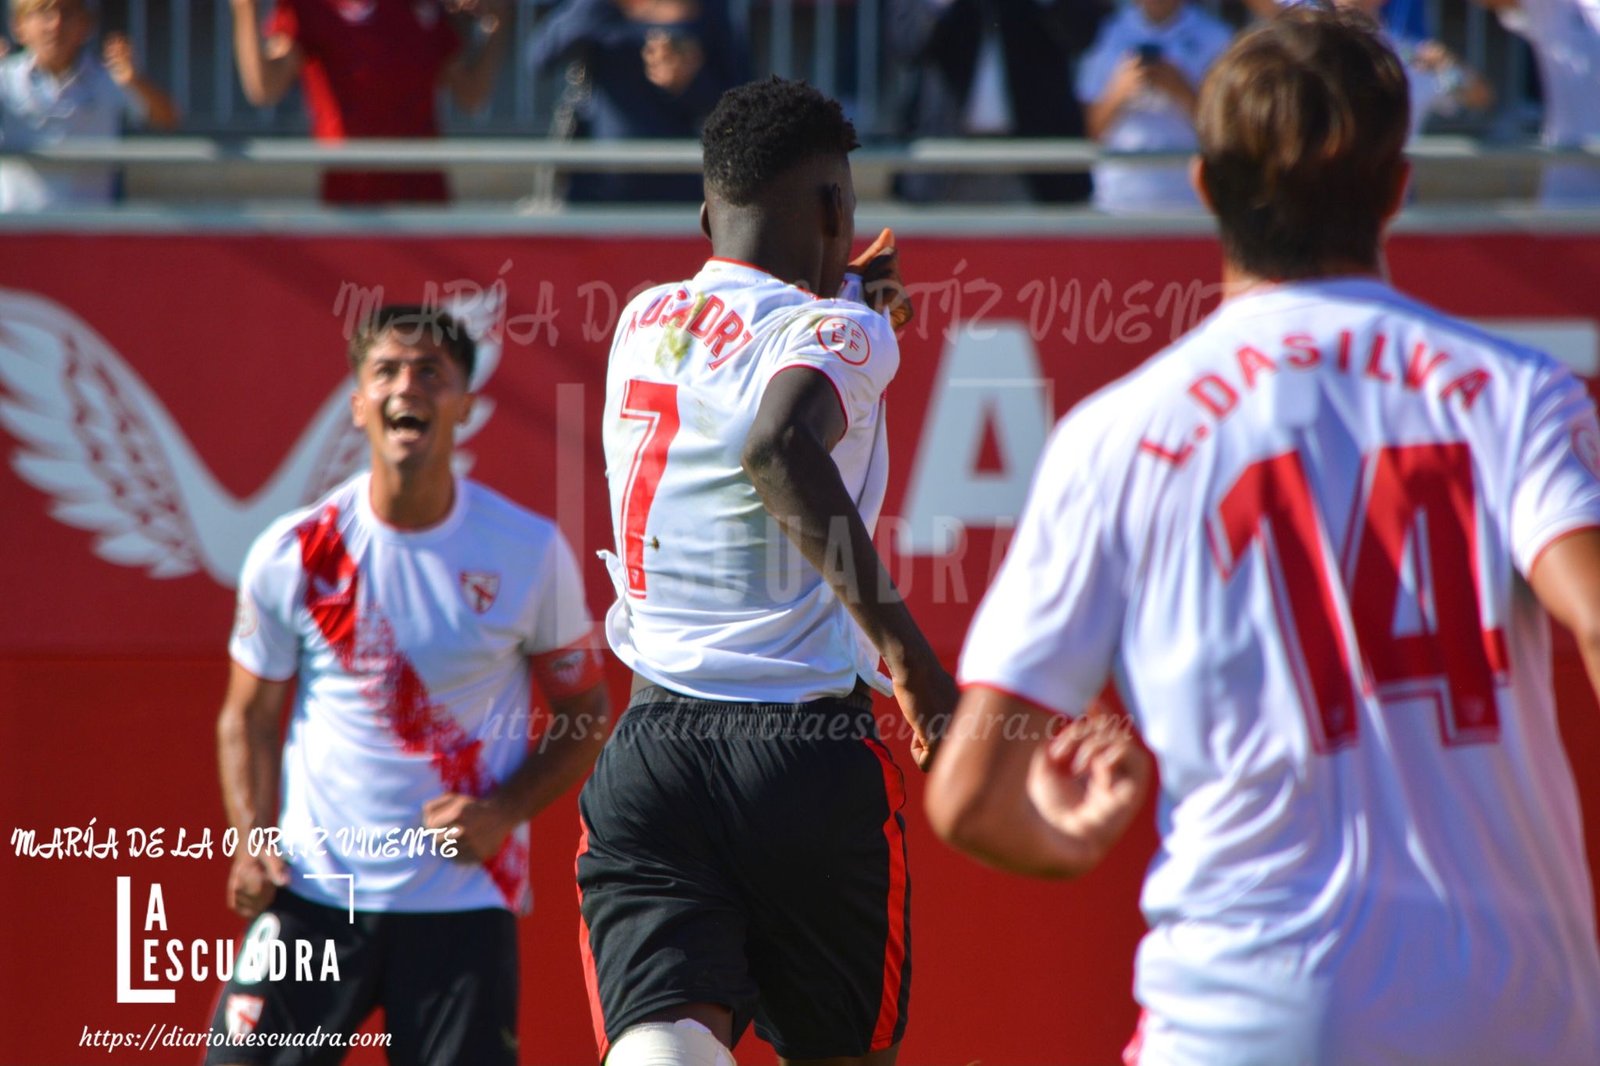 CRÓNICA: Musa da tres puntos de oro al Sevilla Atlético